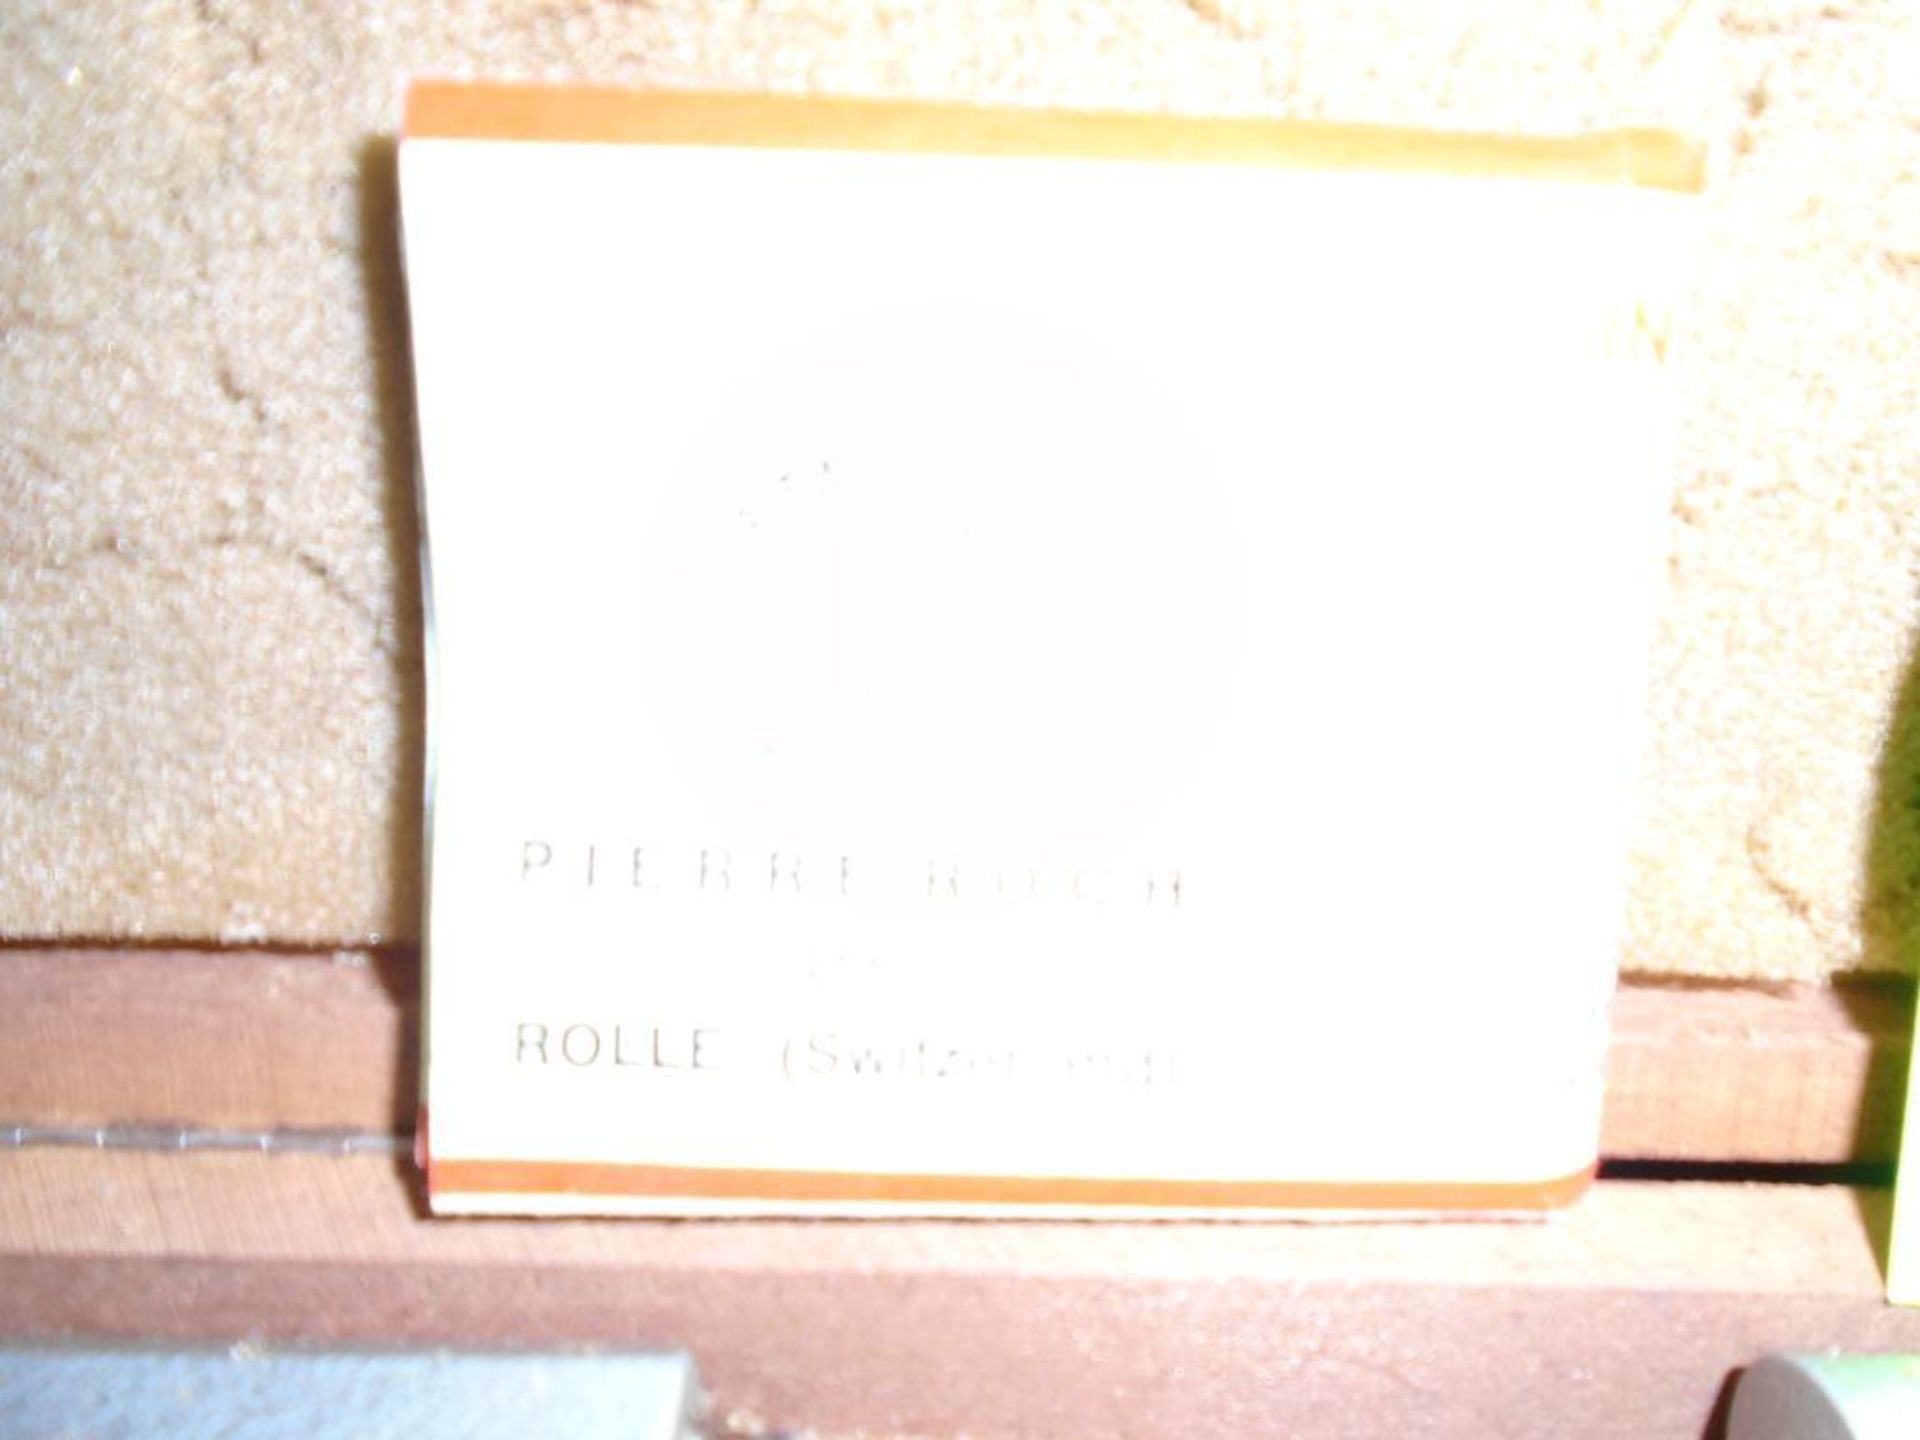 Etalon Pierre Roch Micrometer - Image 3 of 3